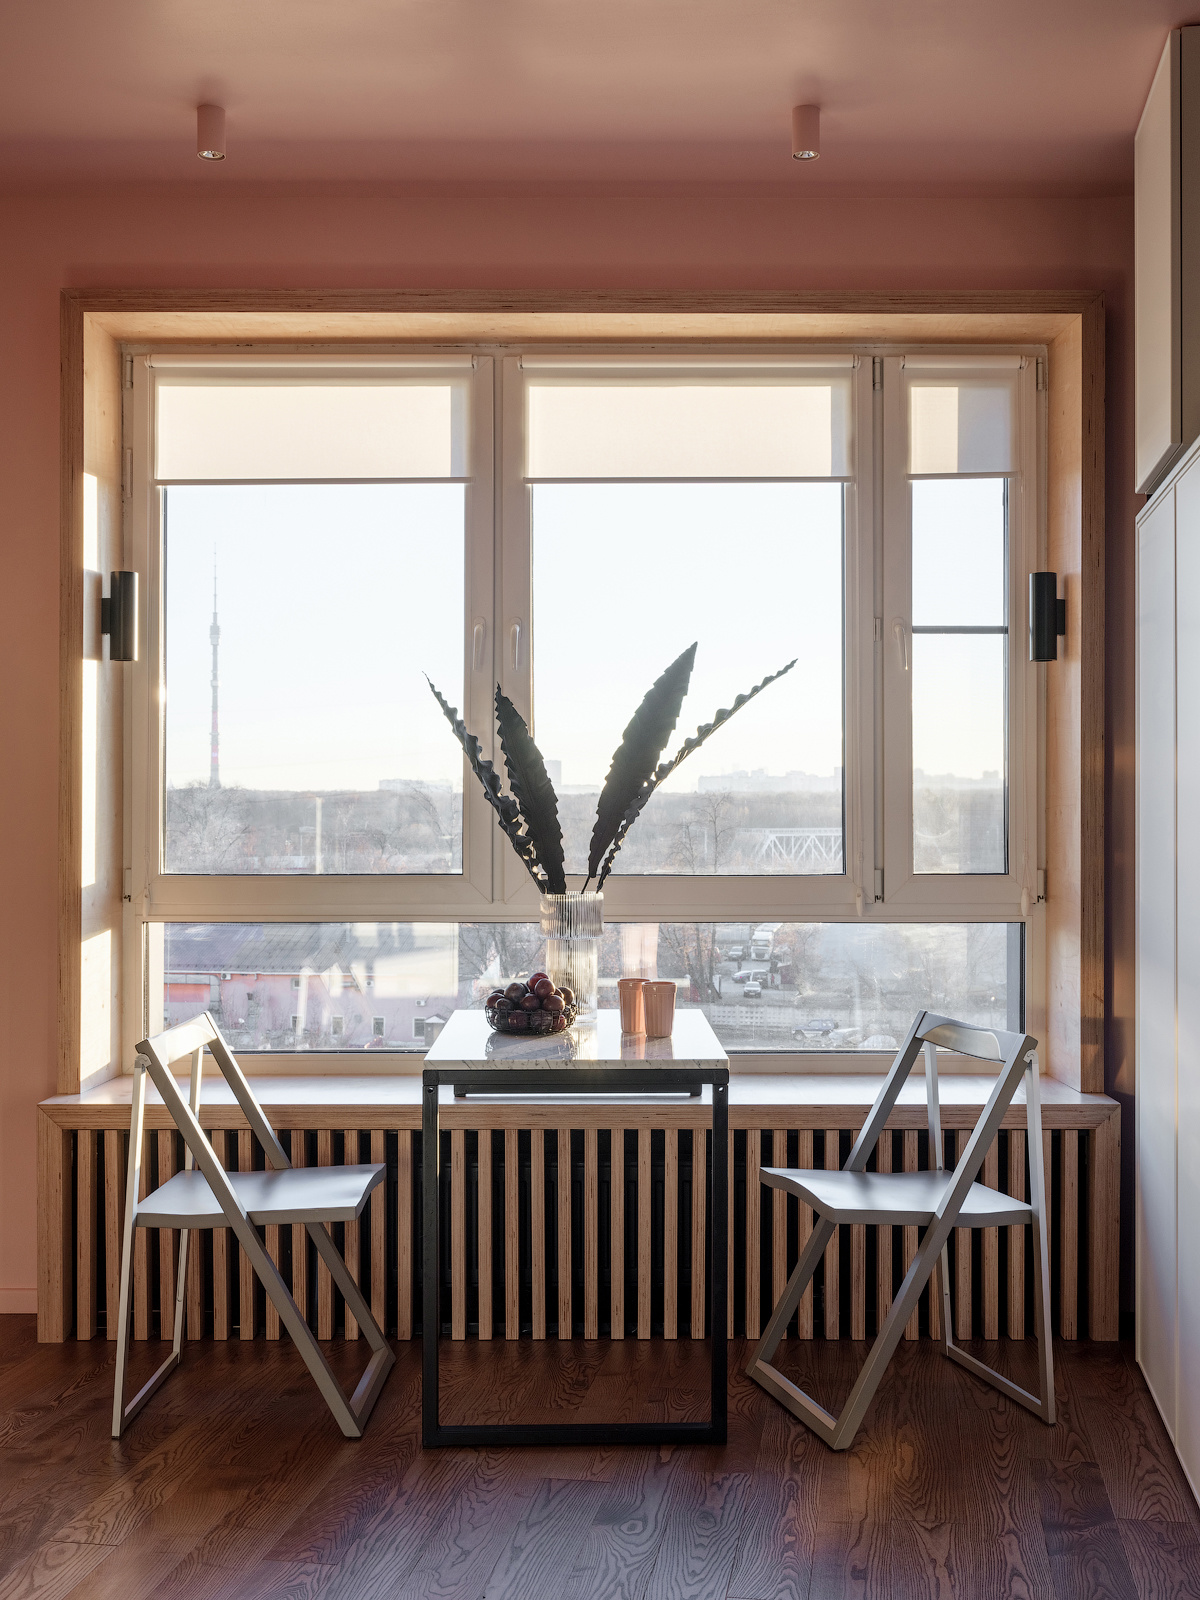 Nhằm tiết kiệm không gian cho căn hộ nhỏ, nội thất khu vực ăn uống chỉ bao gồm một chiếc bàn và cặp ghế đơn giản. Tất cả đều có thể xếp lại gọn gàng sau khi sử dụng, trả lại bệ cửa sổ thông thoáng để làm nơi thư giãn.